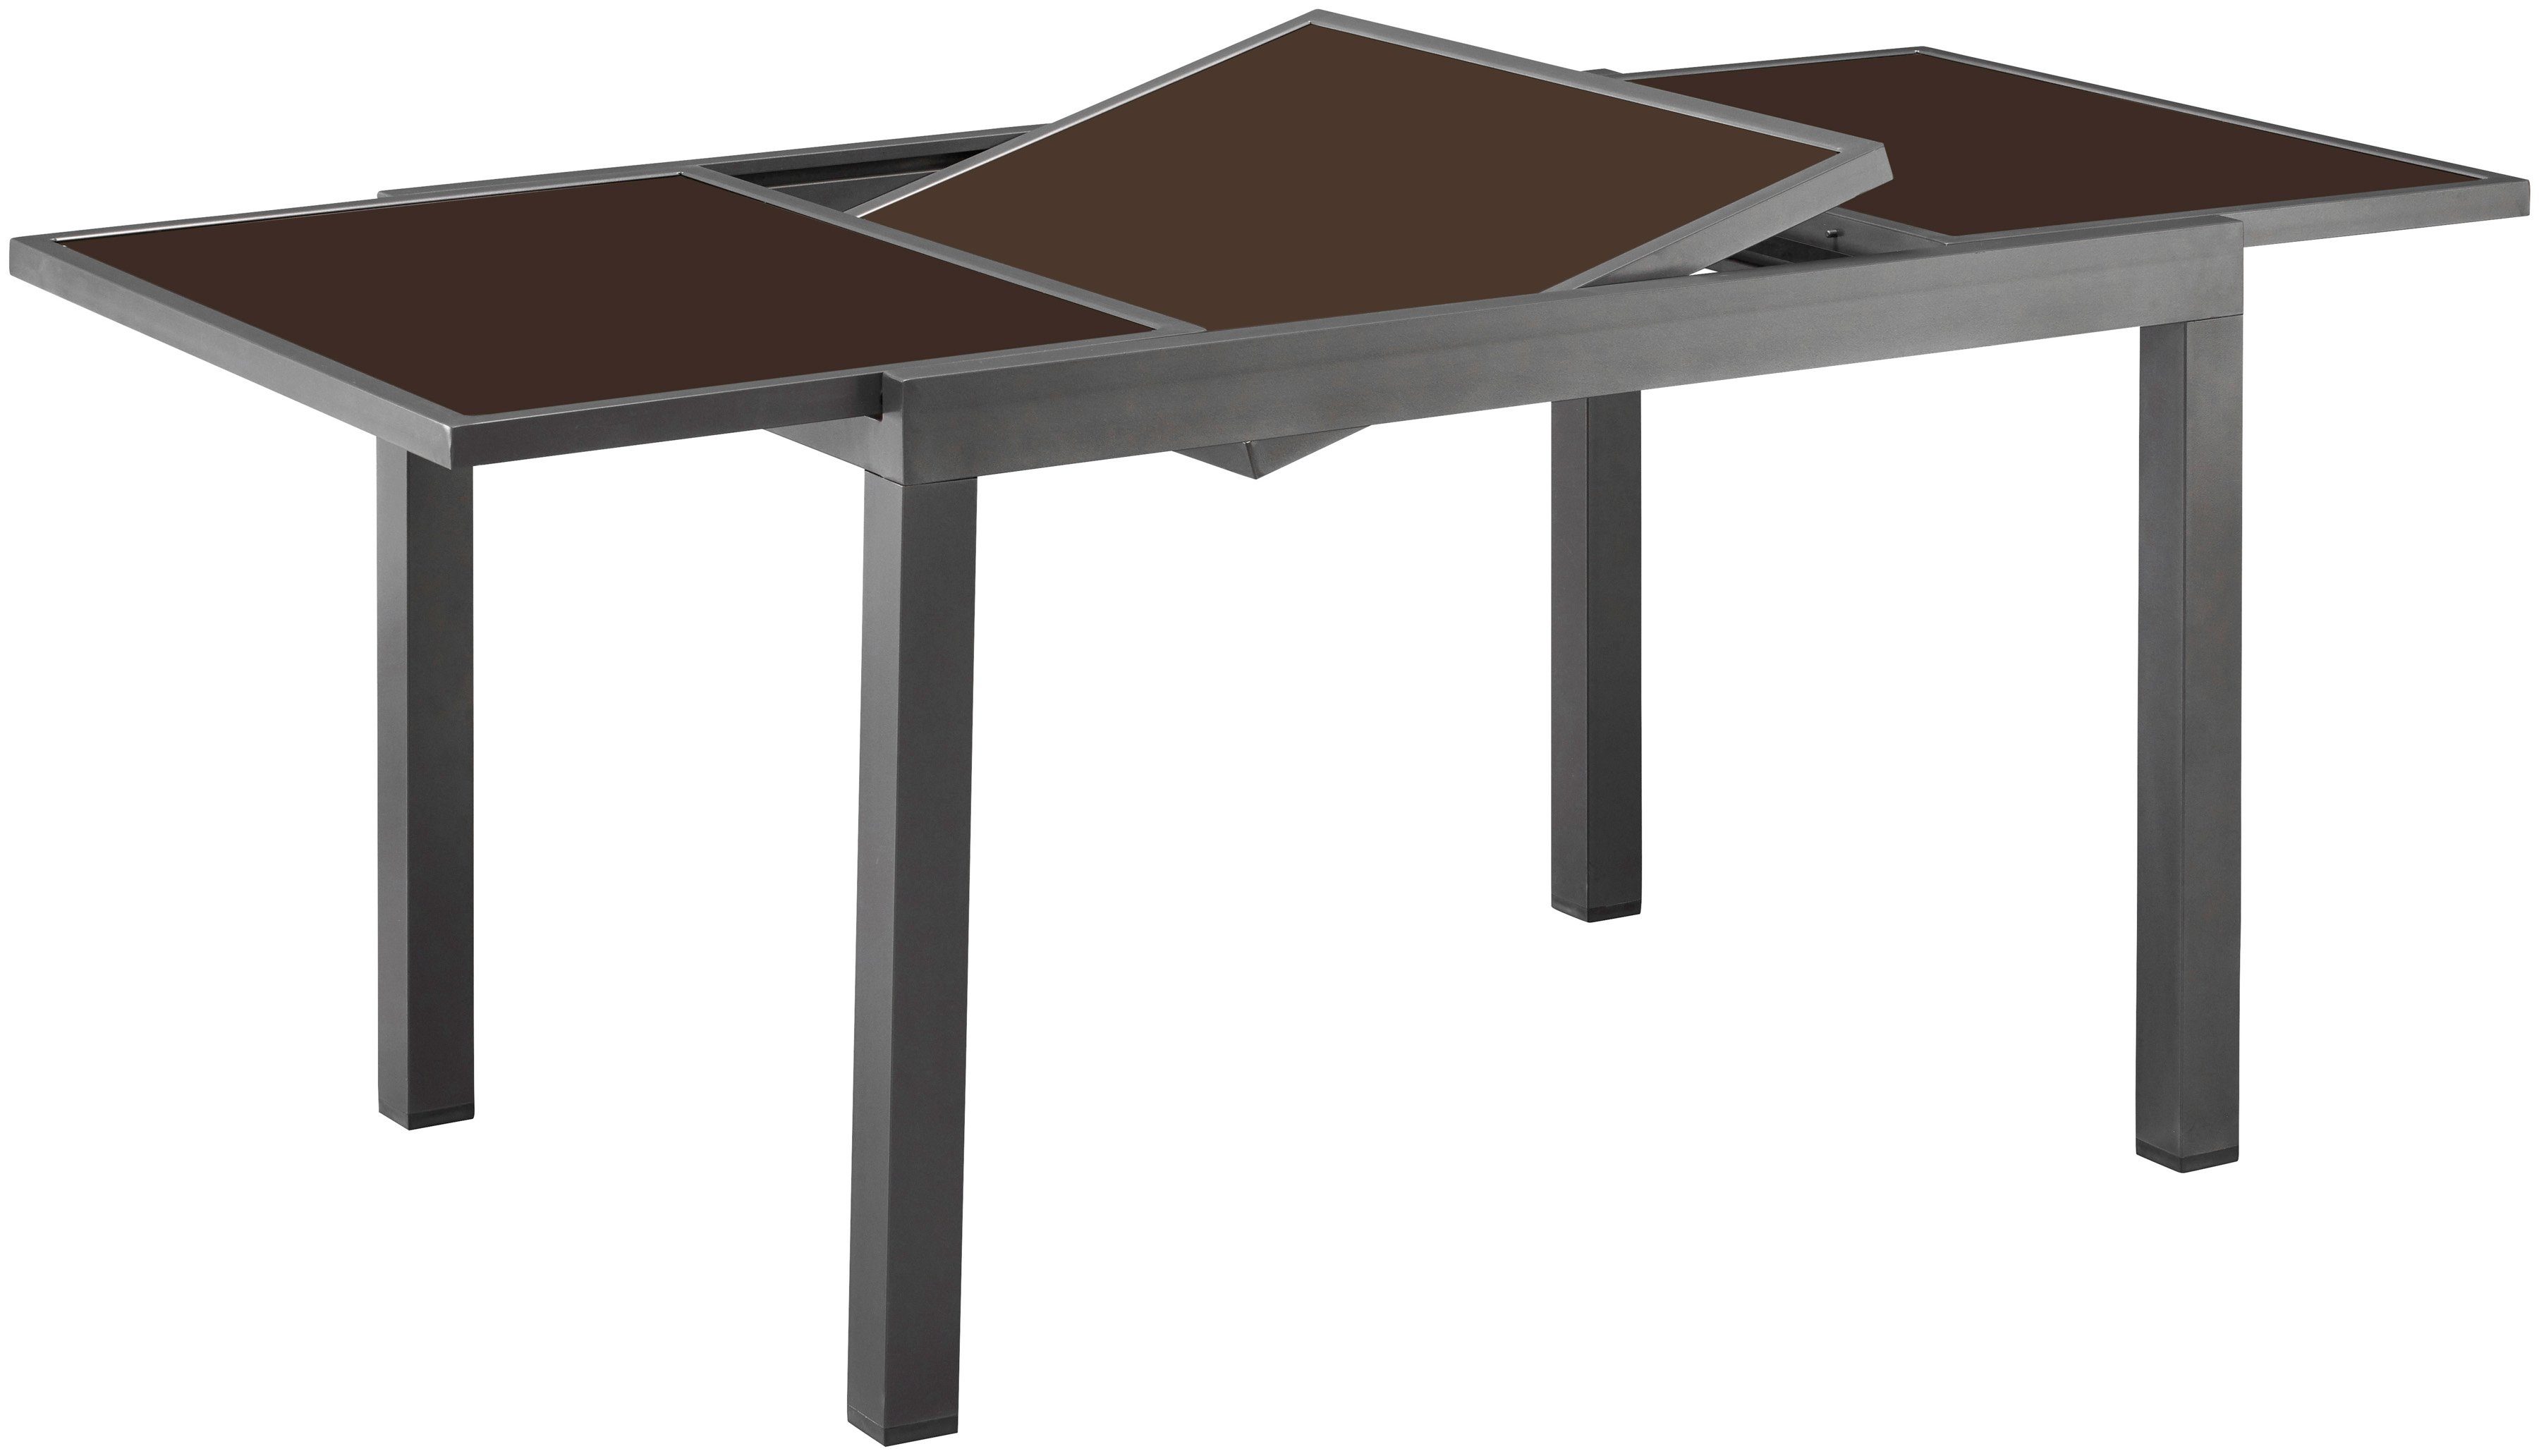 ausziehbar nach auf 180-240cm Amalfi, anthrazit Variante je MERXX Gartentisch